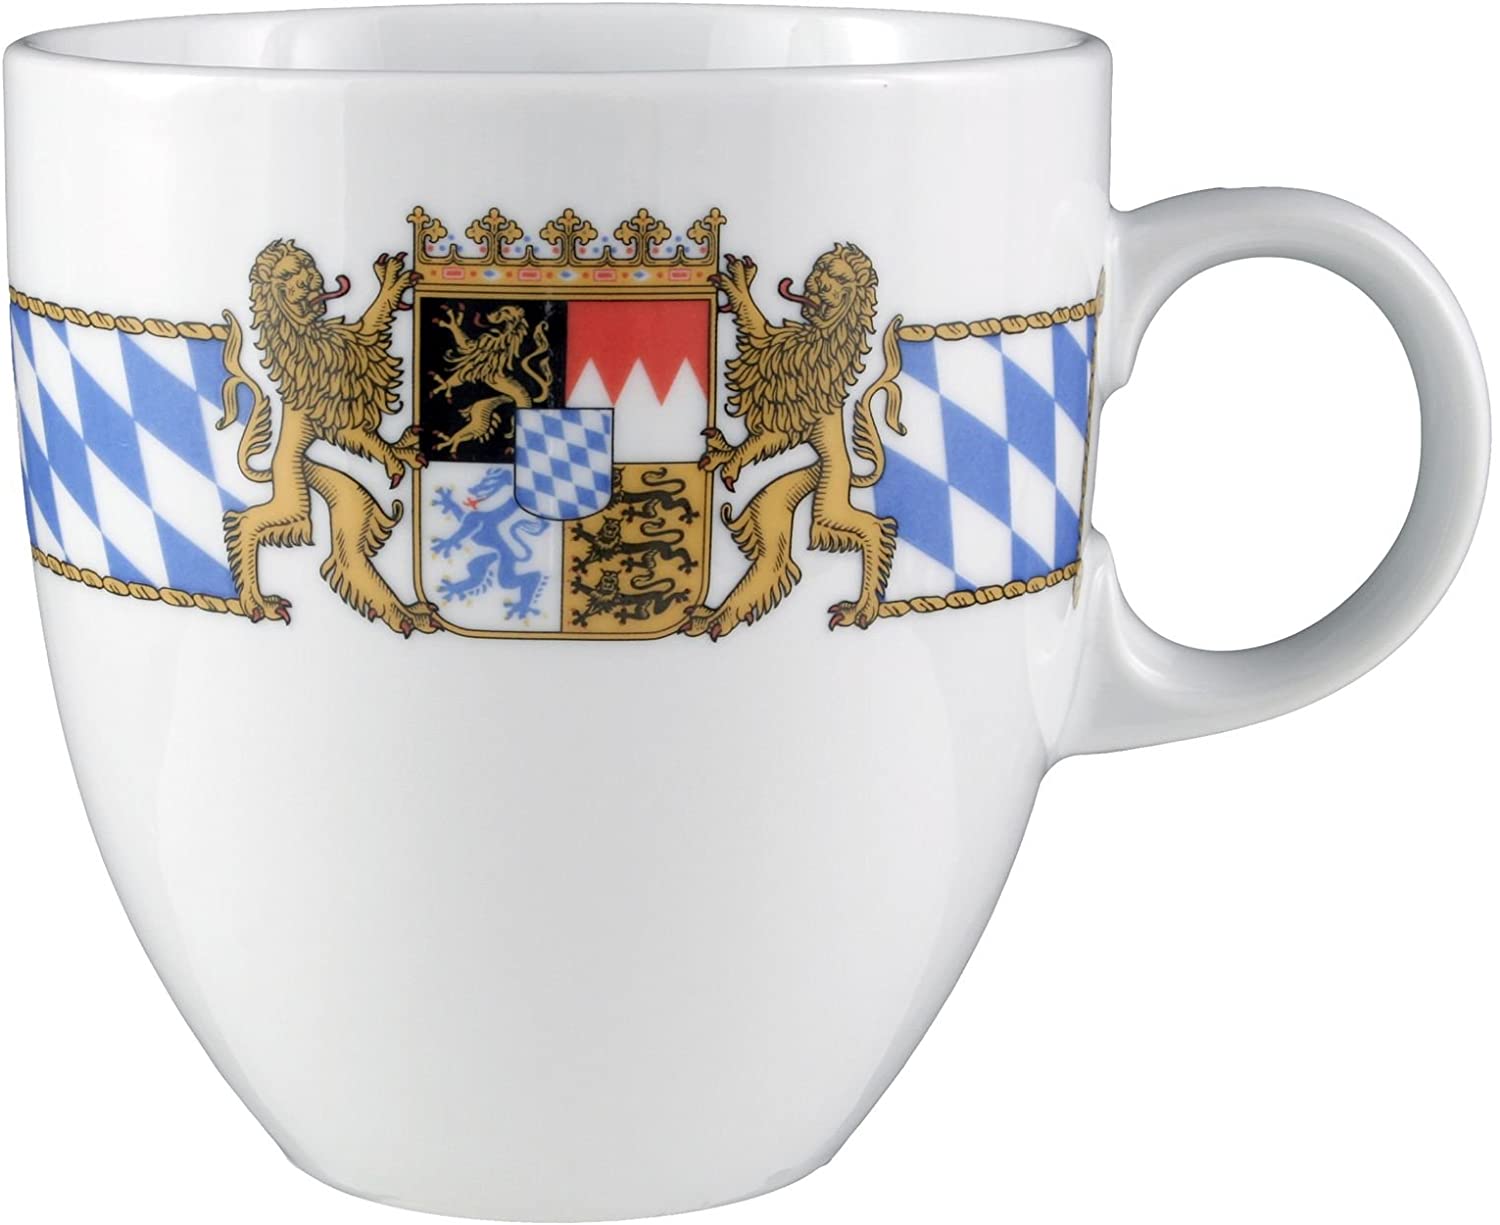 13.5 cm Compact Compact Bayern 27110 Mug by Seltmann Weiden